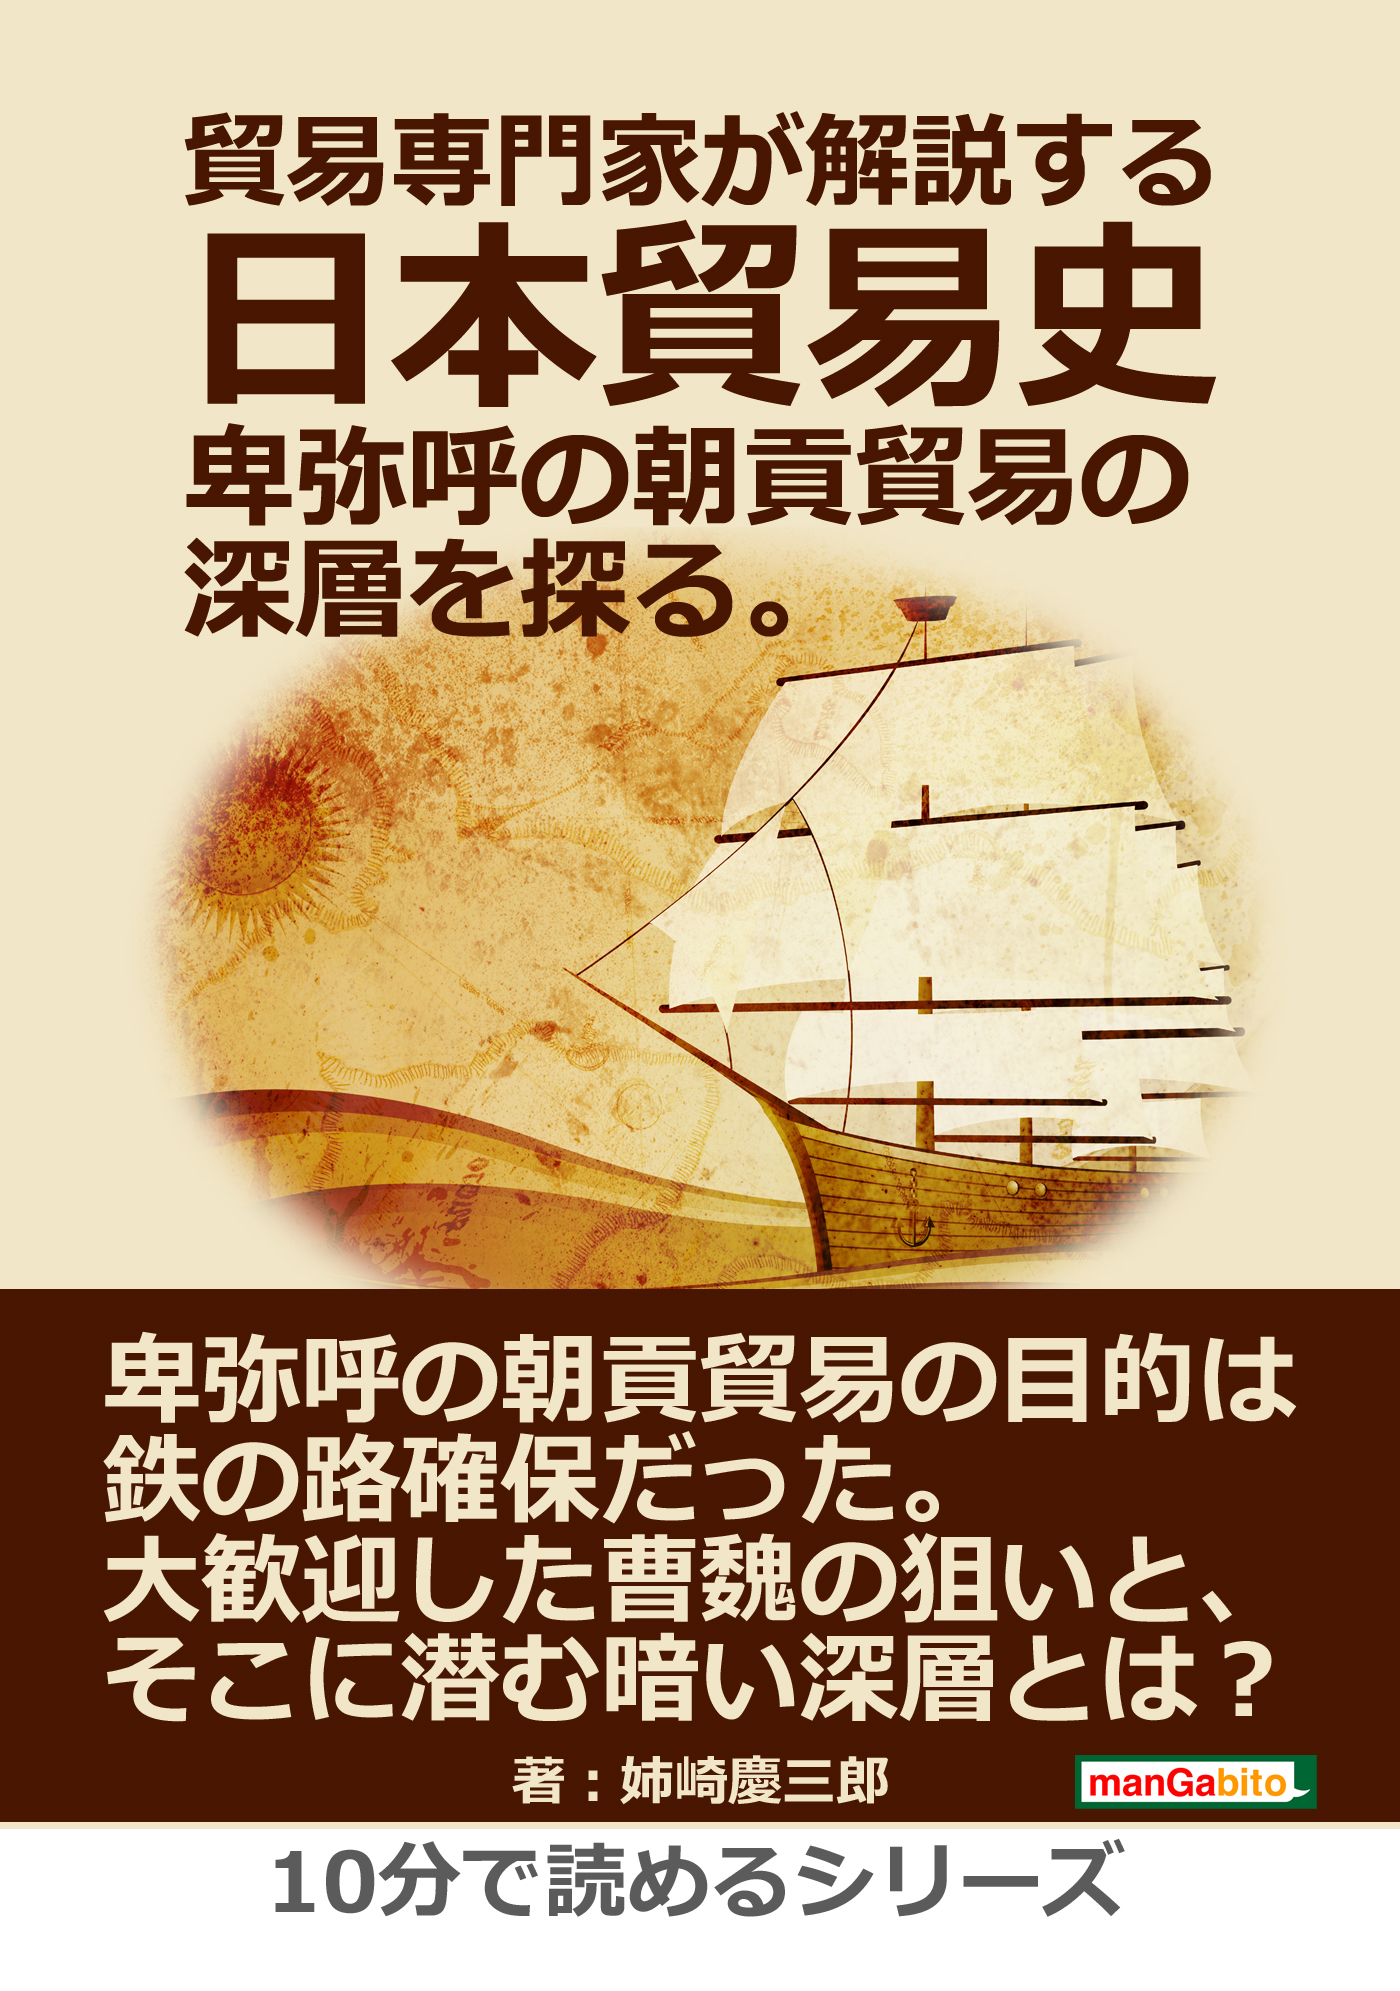 貿易専門家が解説する日本貿易史。卑弥呼の朝貢貿易の深層を探る。10分 